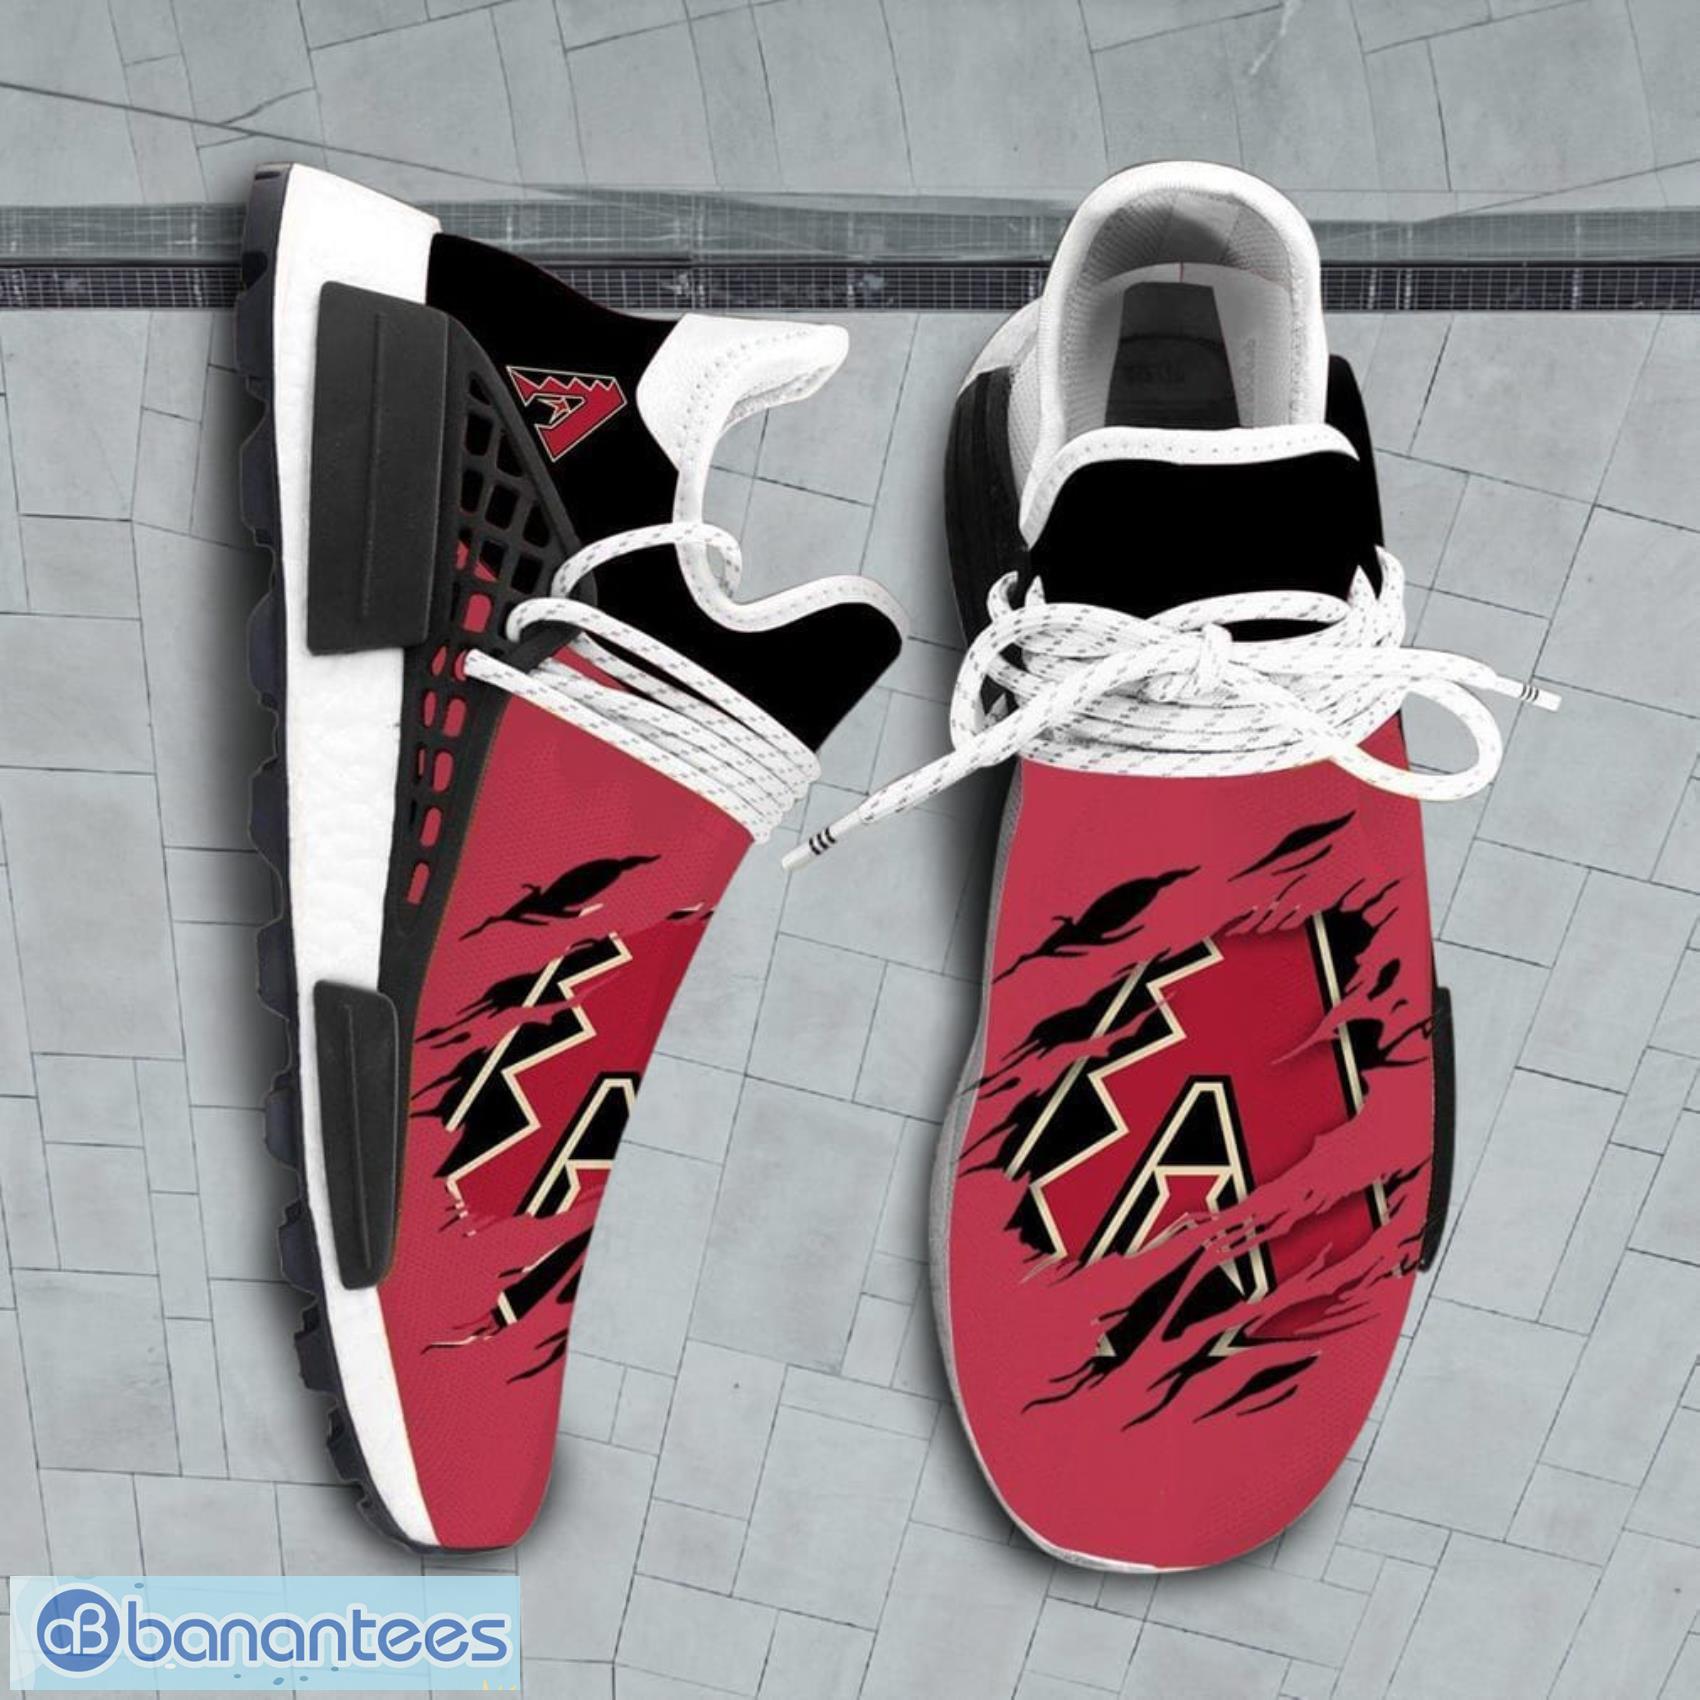 Boston Red Sox Sport Team Air Jordan 13 Shoes For Men And Women - Banantees